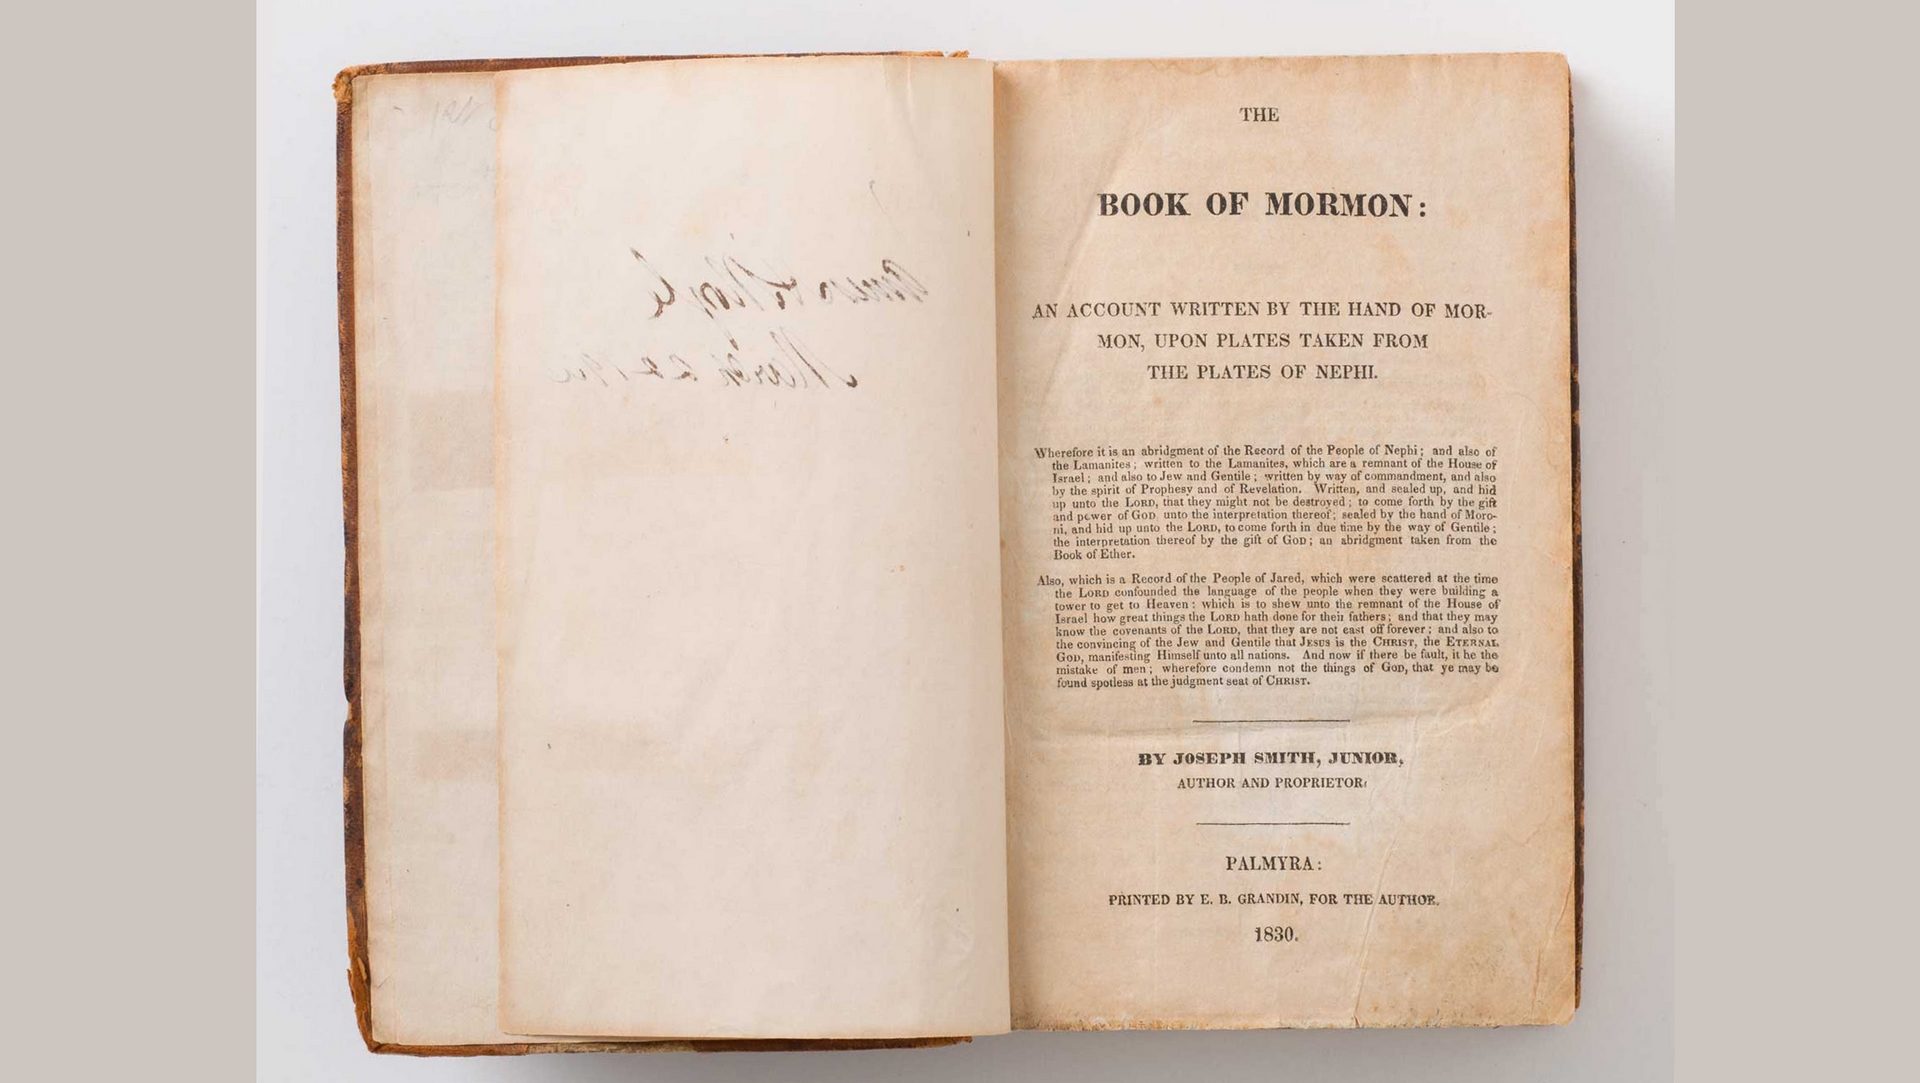 La page de garde de la 1ere édition du Livre de Mormon en 1830 